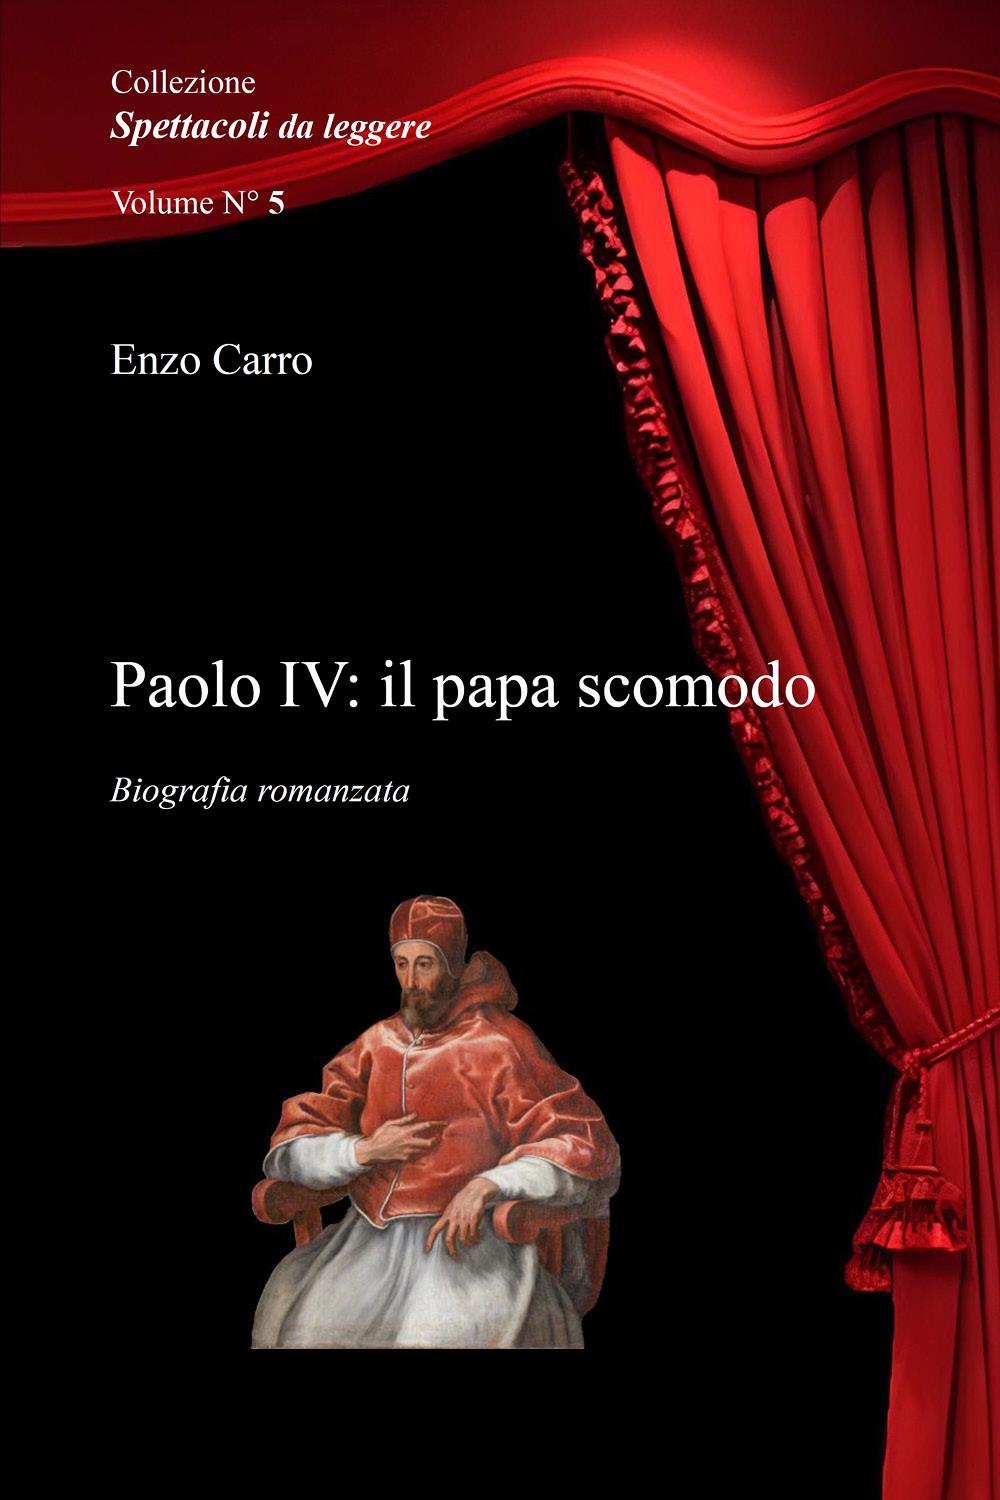 Paolo IV: il papa scomodo